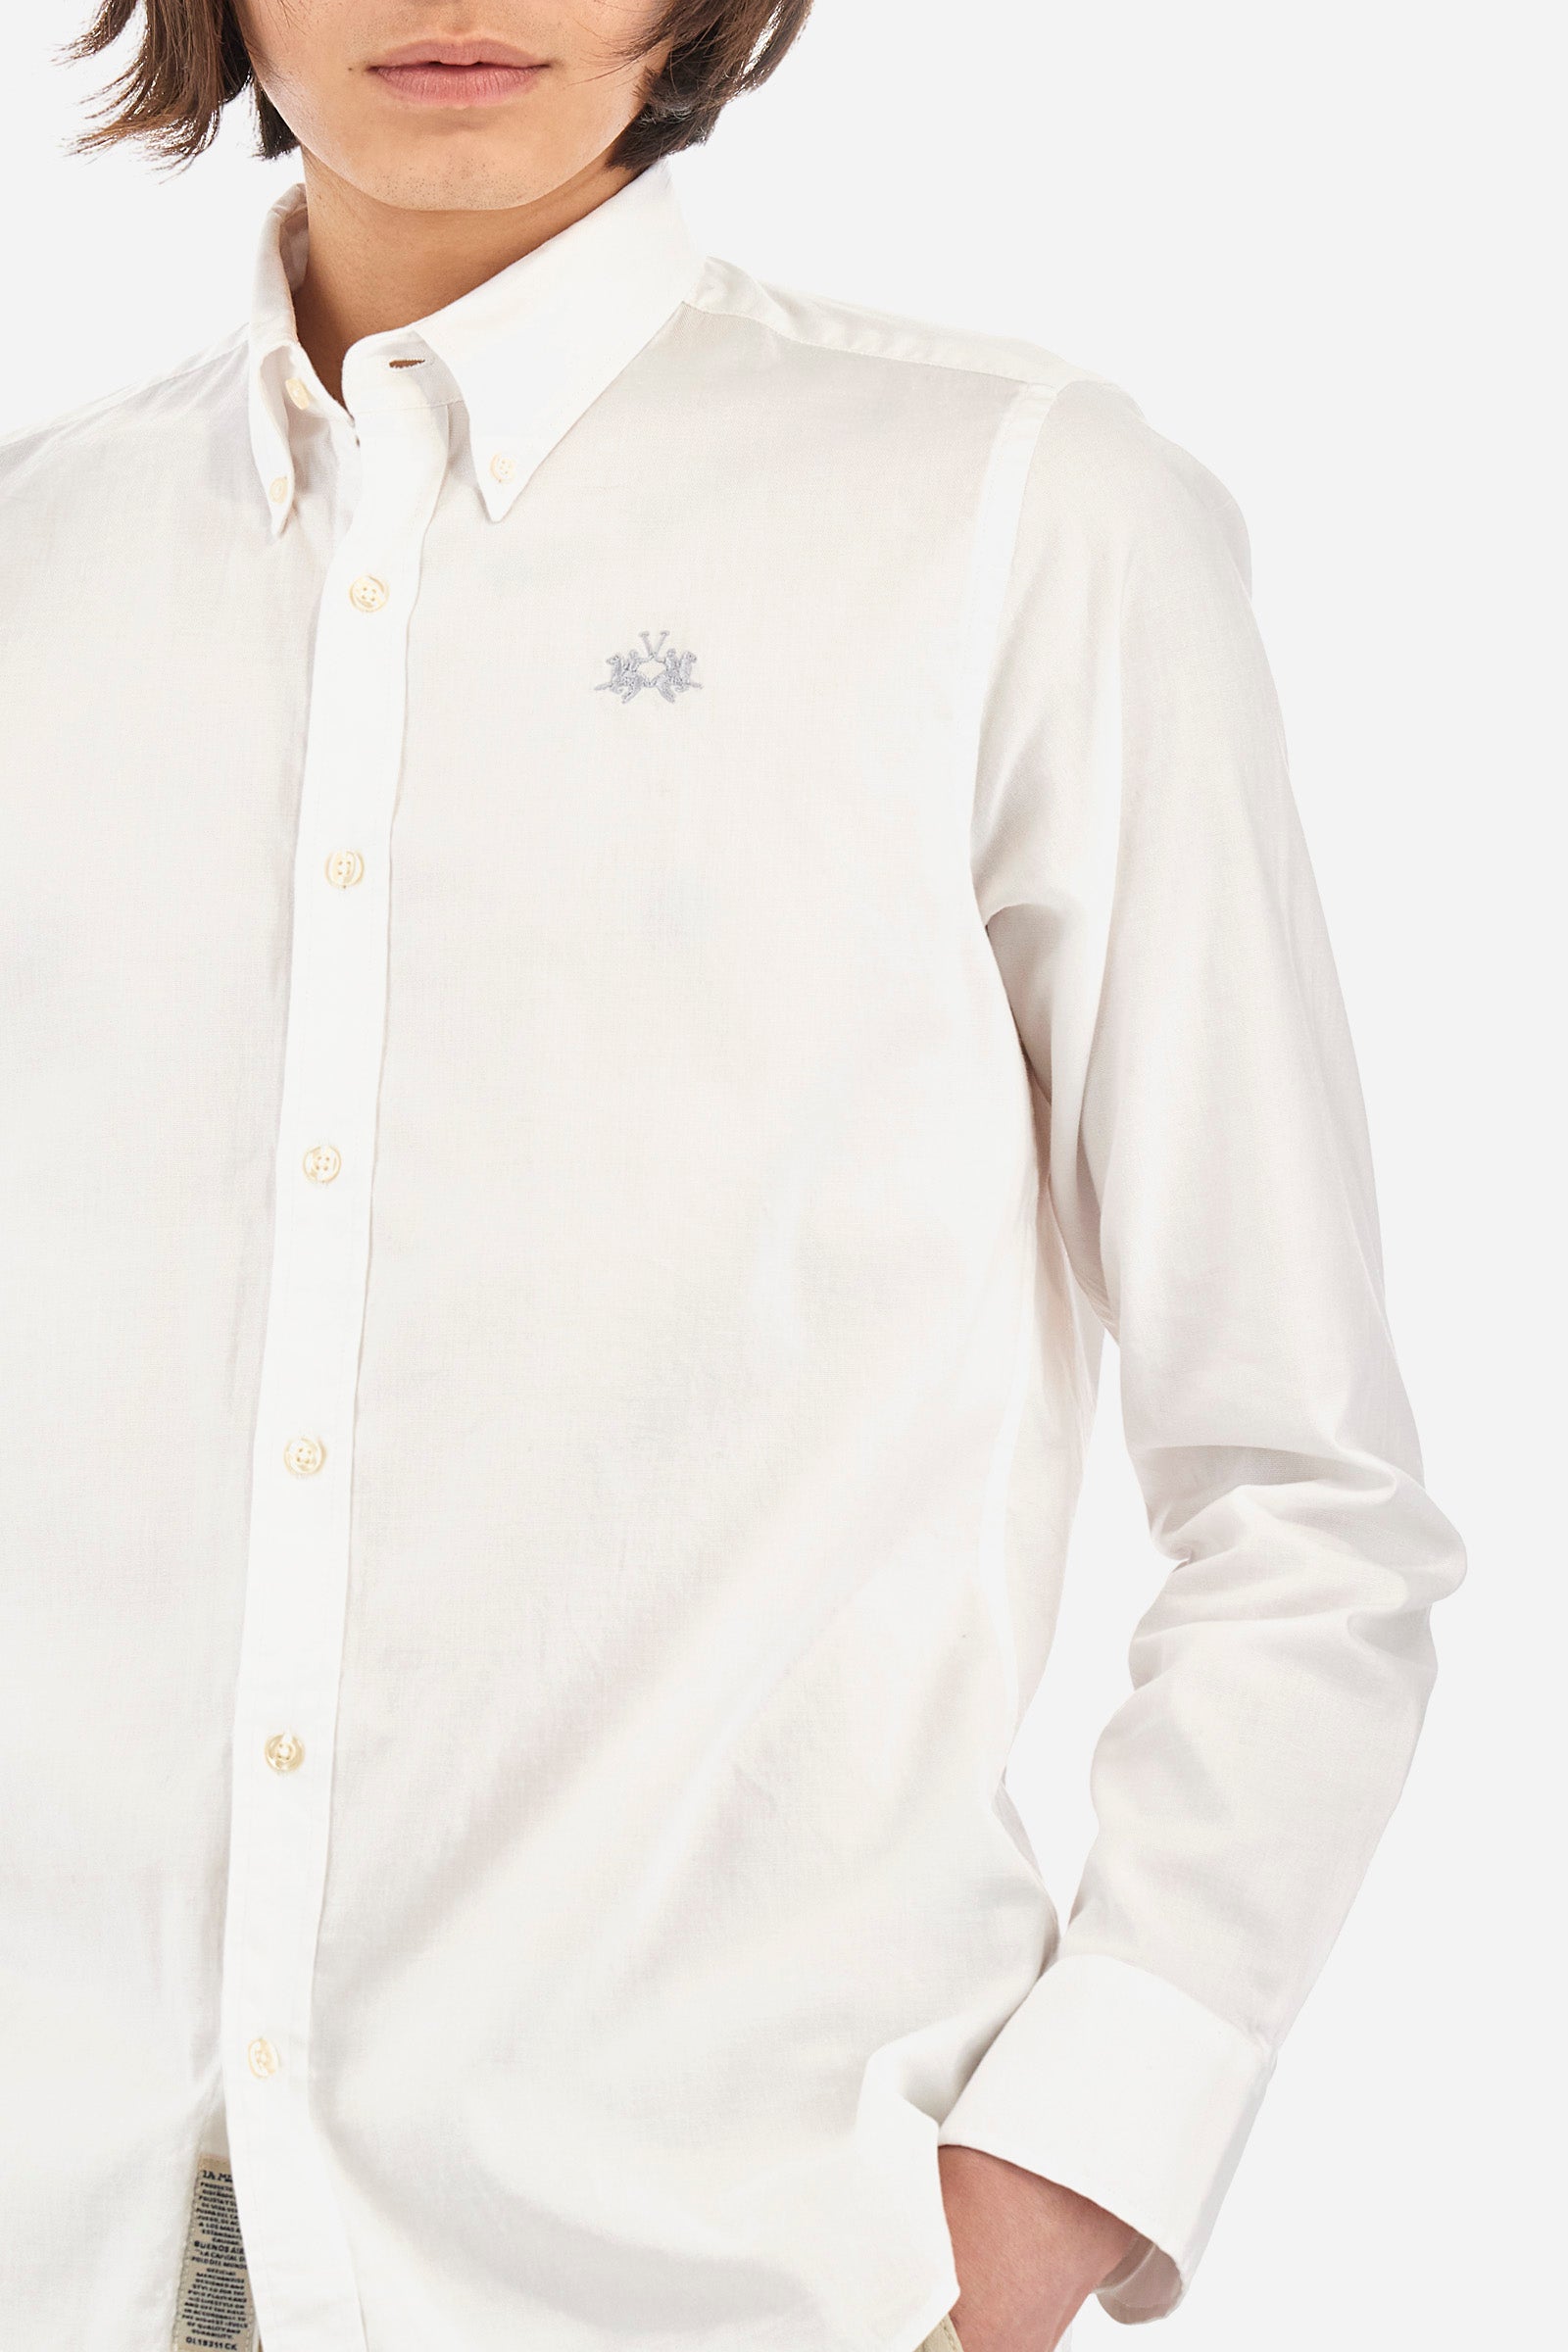 Camisa de hombre en algodón slim fit manga larga